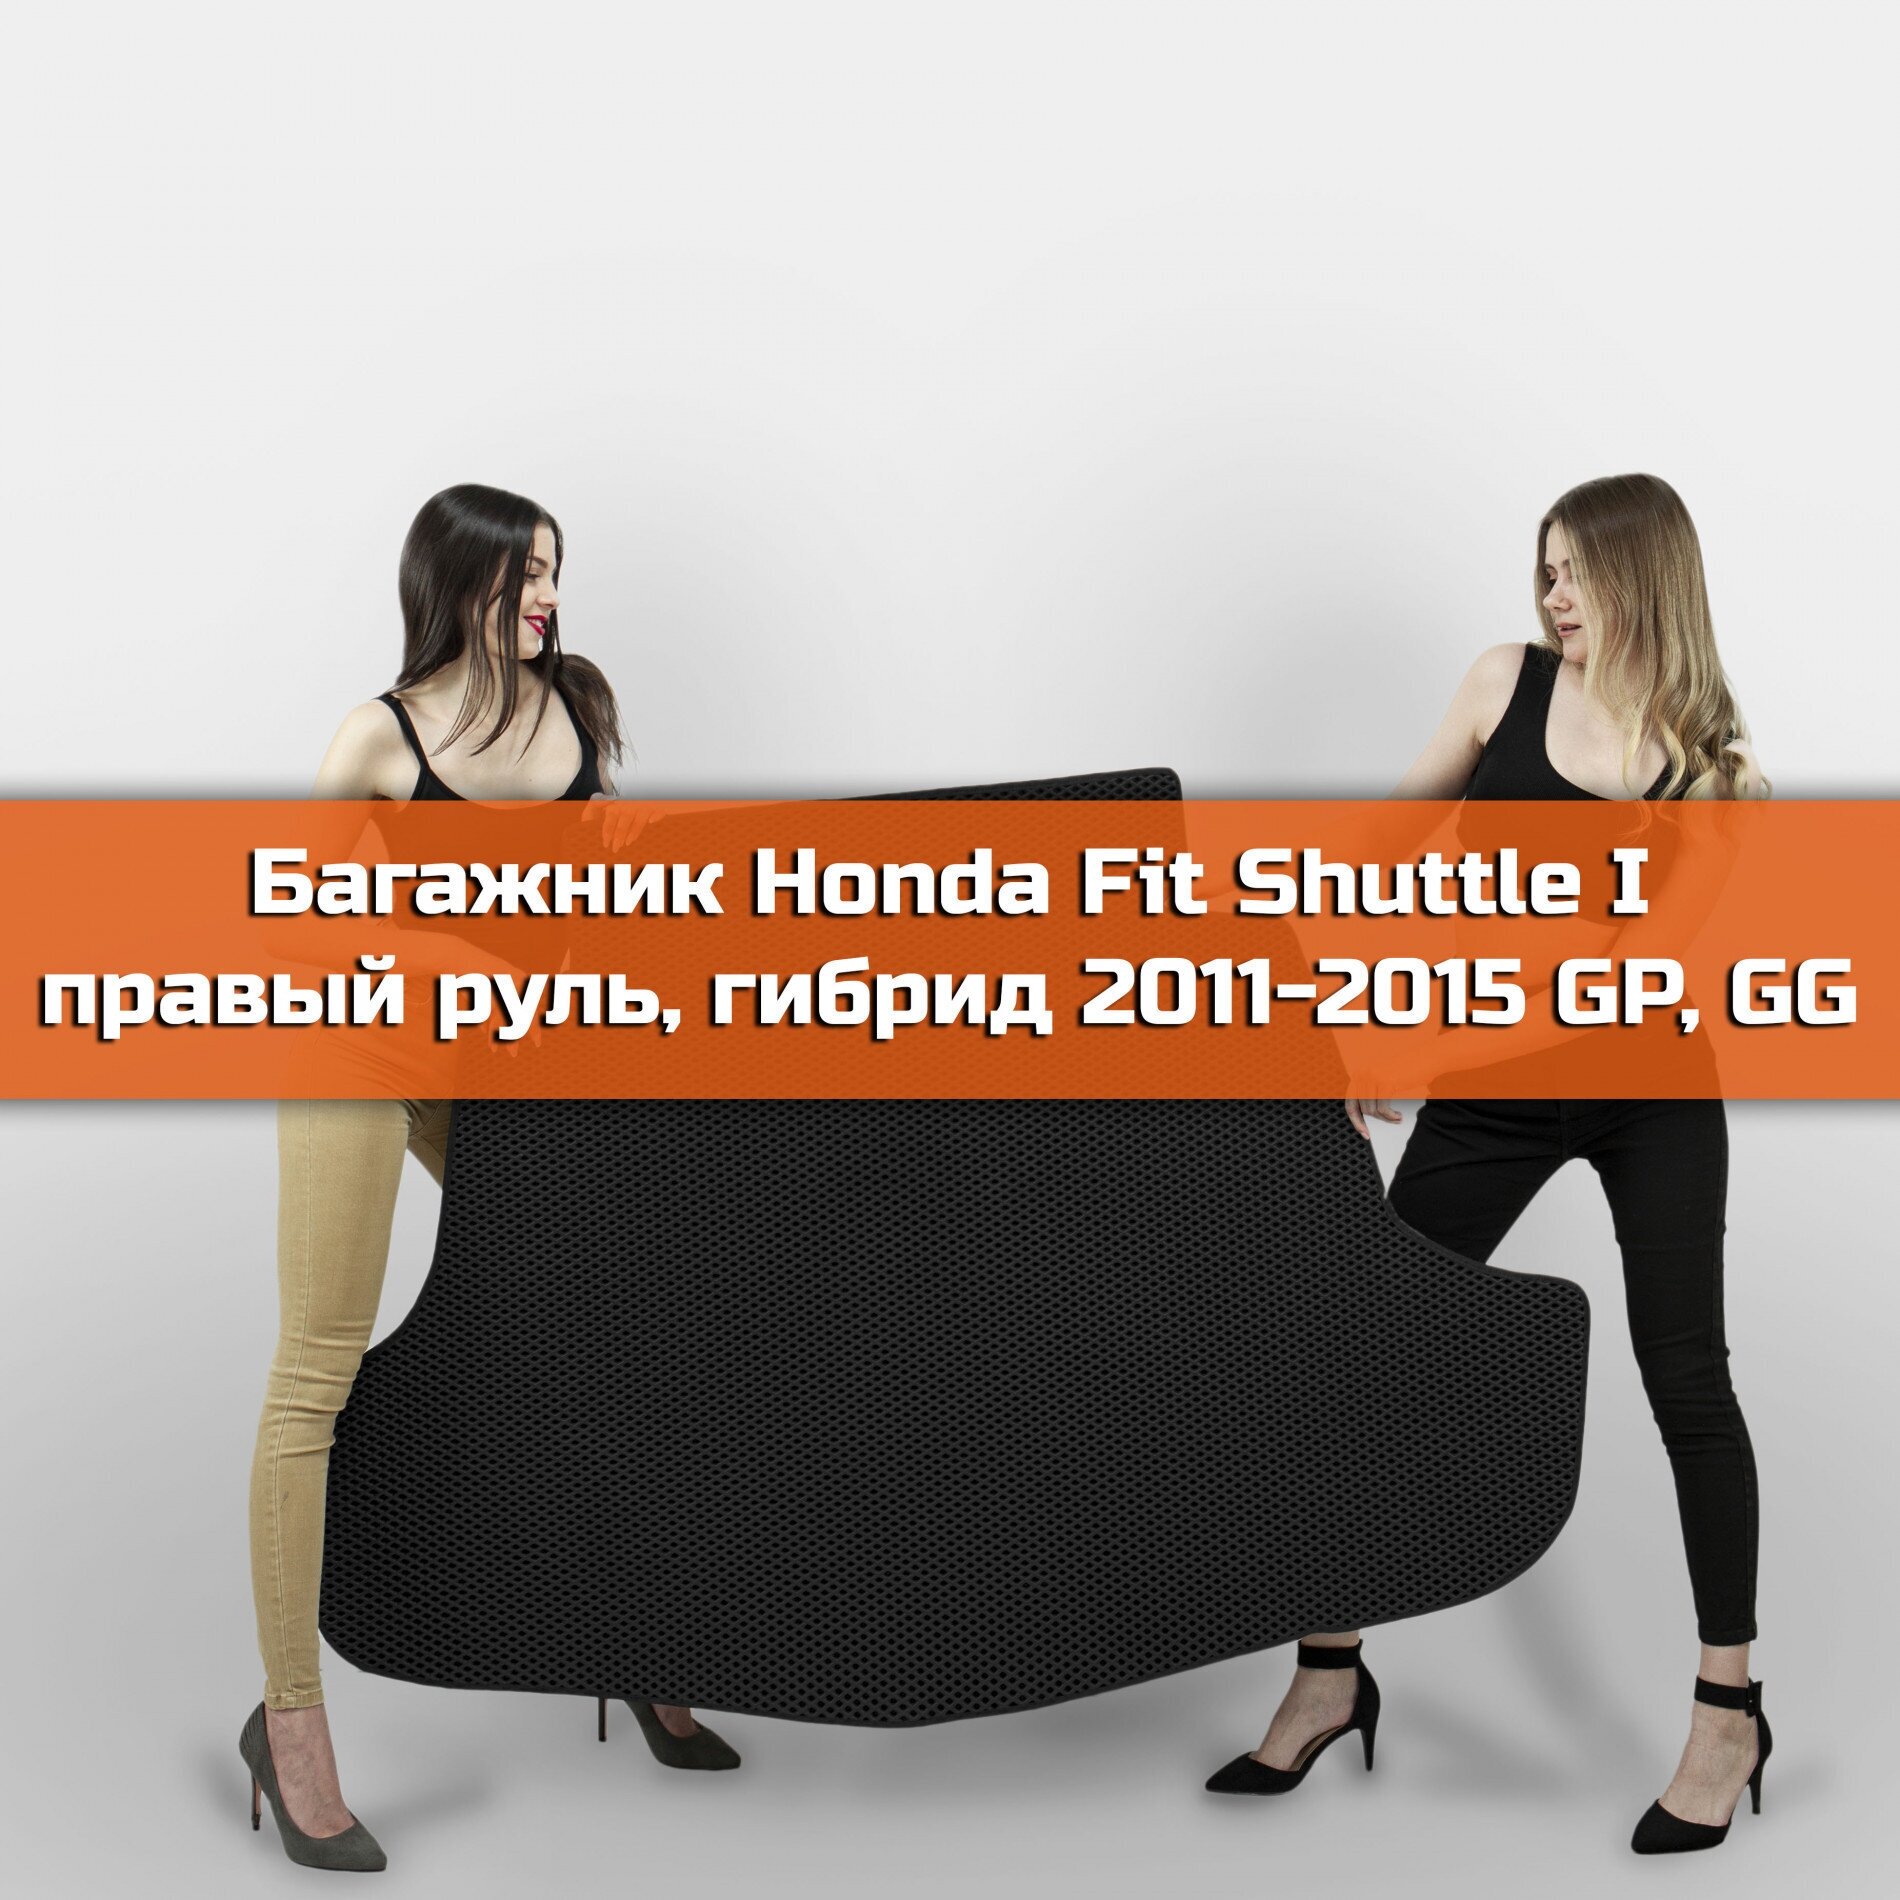 Коврик EVA в багажник для Honda Fit Shuttle I правый руль Гибрид GP GG 2011-2015. 1 Ромб Черный с черной окантовкой